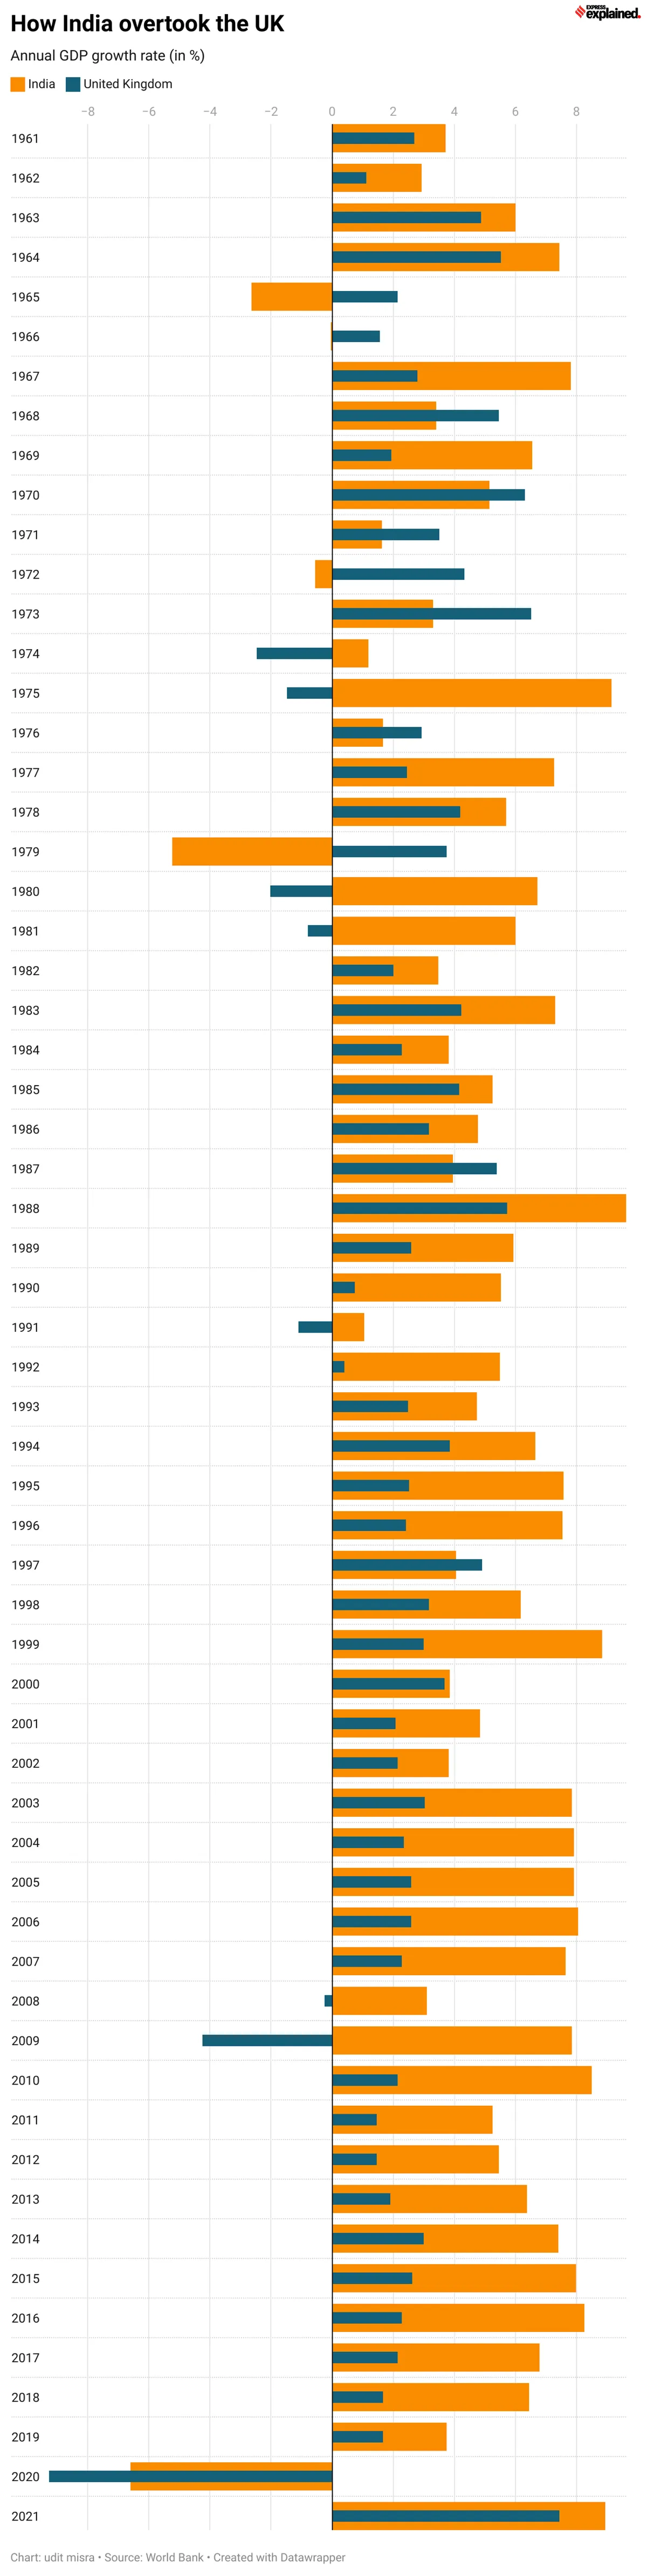 1960-2021ஆம் வரையிலான ஆண்டு வளர்ச்சி